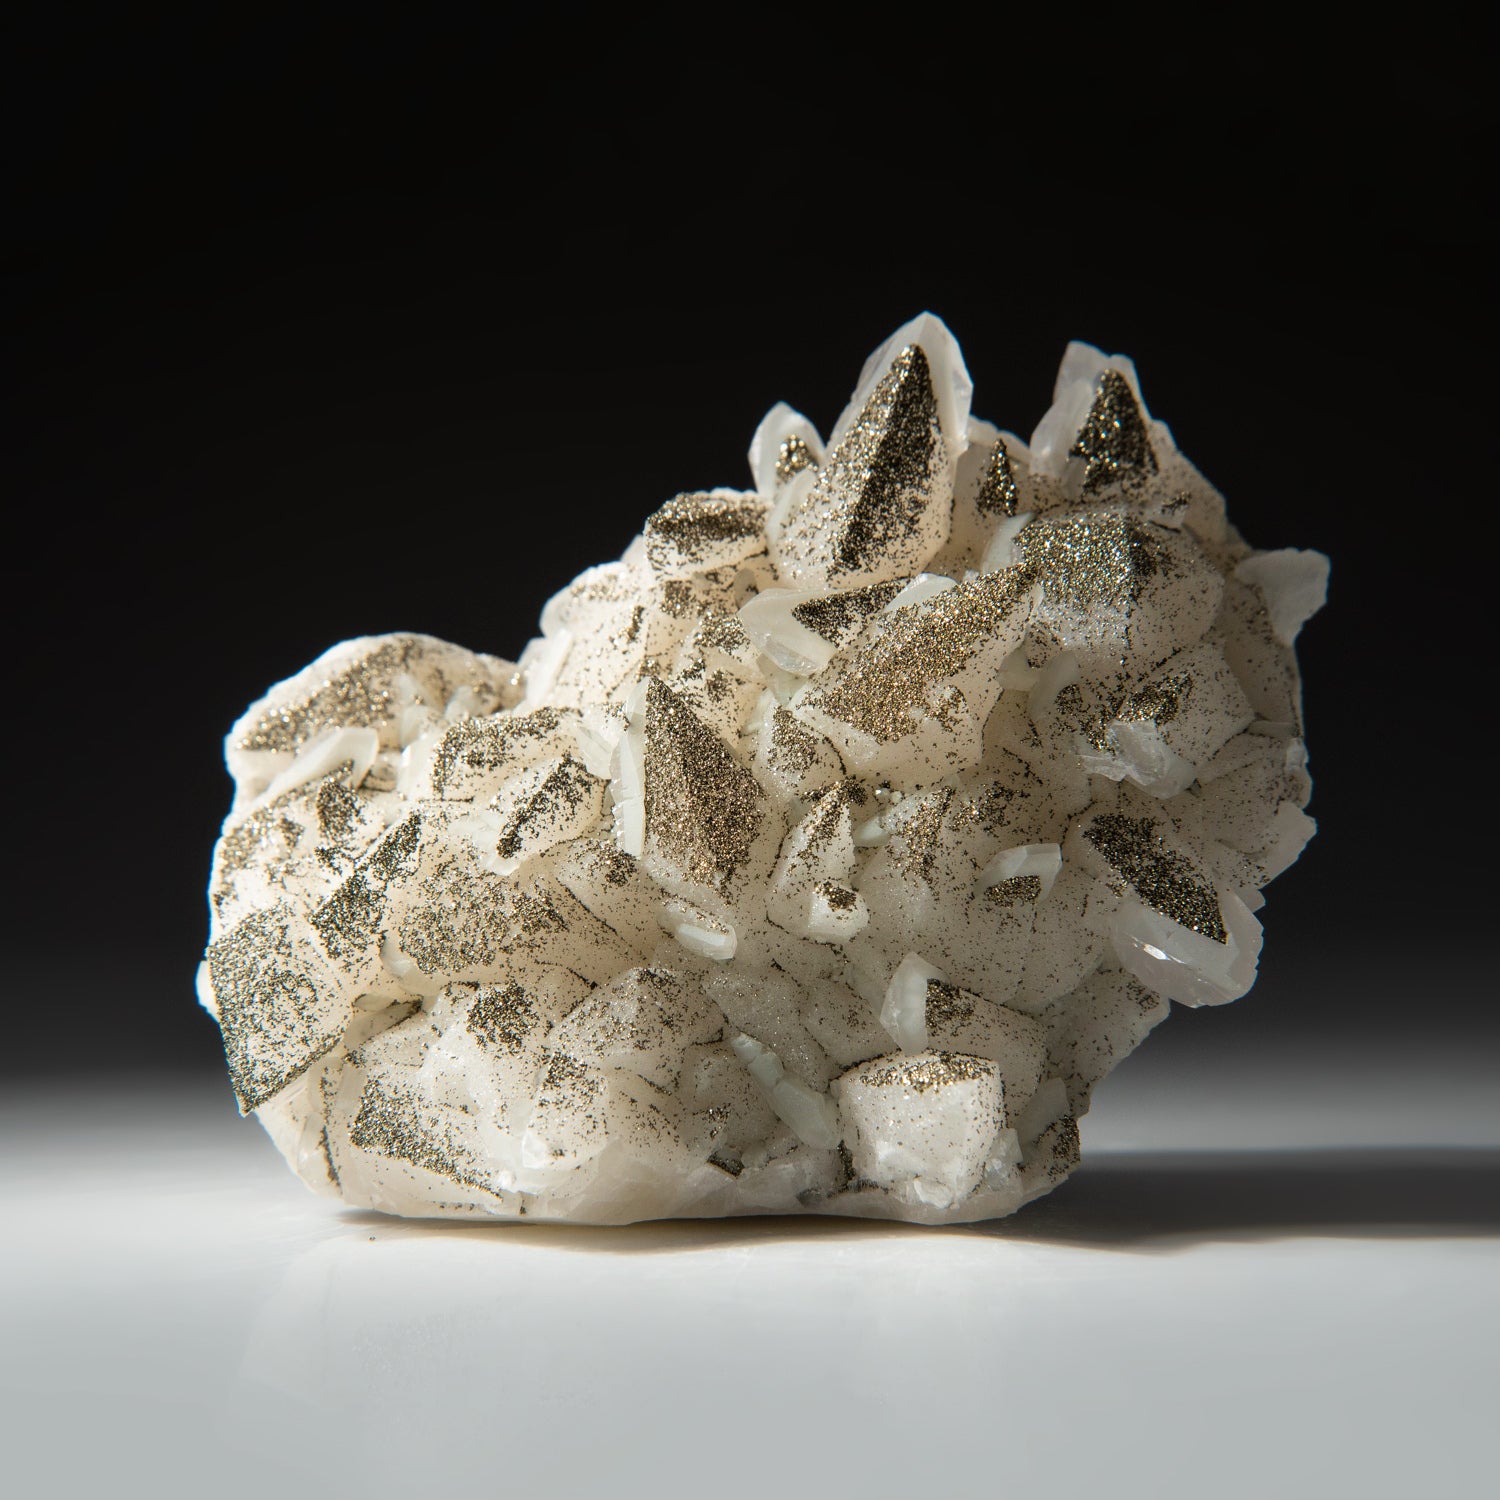 Pyrite Over Calcite From Dachang Sn-polymetallic ore field, Nandan Co., Hechi Prefecture, Guangxi Zhuang Autonomous Region, China